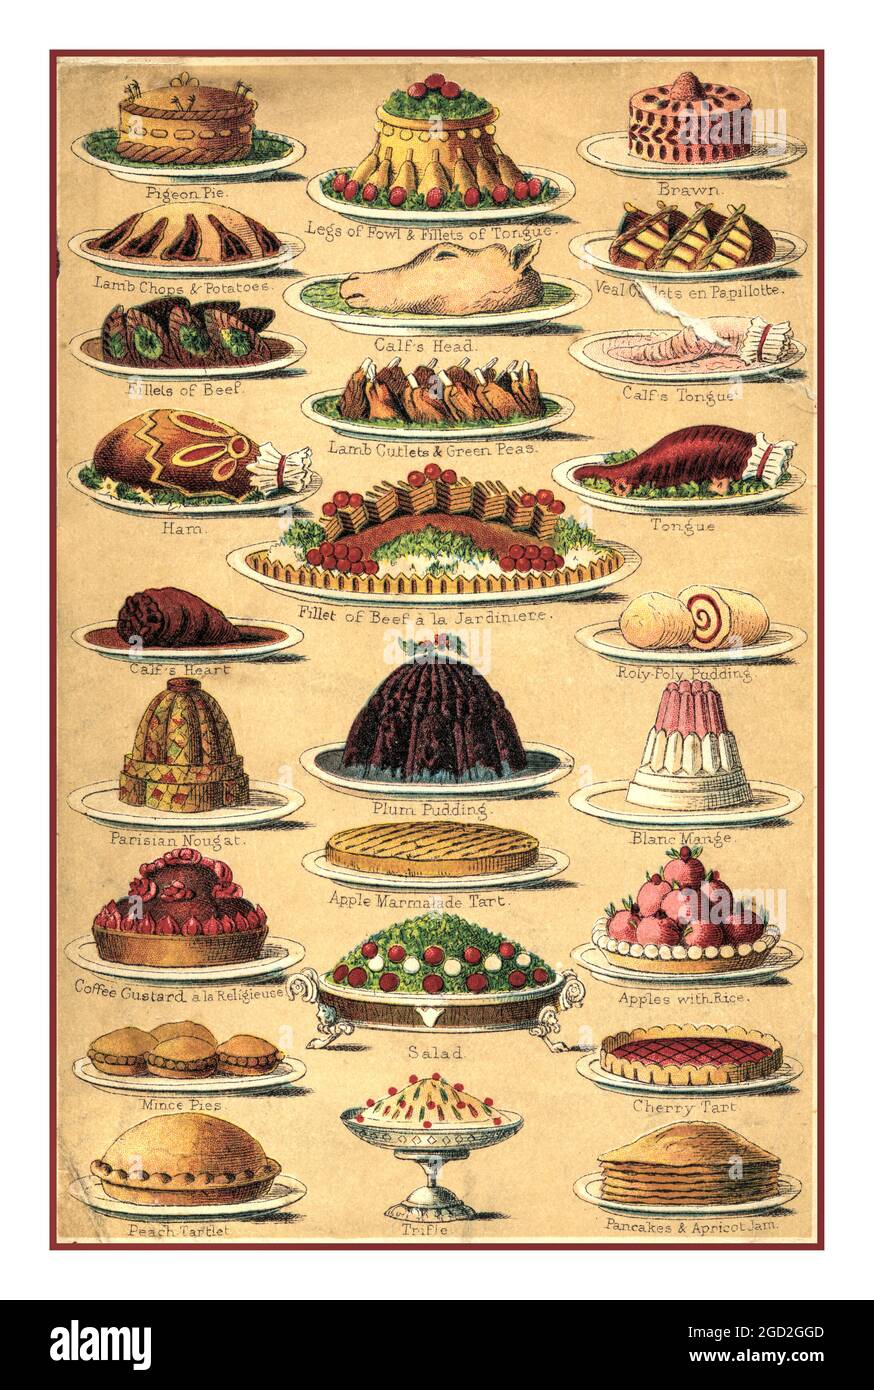 1890's Color lithograph from Mrs Beetons Cookery Book illustrant la variété de Noël divertissant des aliments victoriens, y compris tourtes puddings et viandes. Numérisation haute résolution améliorée et remasterisée à partir d'une plaque de couleur lithographique originale dans le livre de cuisine de Mme Beeton des années 1890 illustrant une variété de produits alimentaires victoriens populaires Banque D'Images